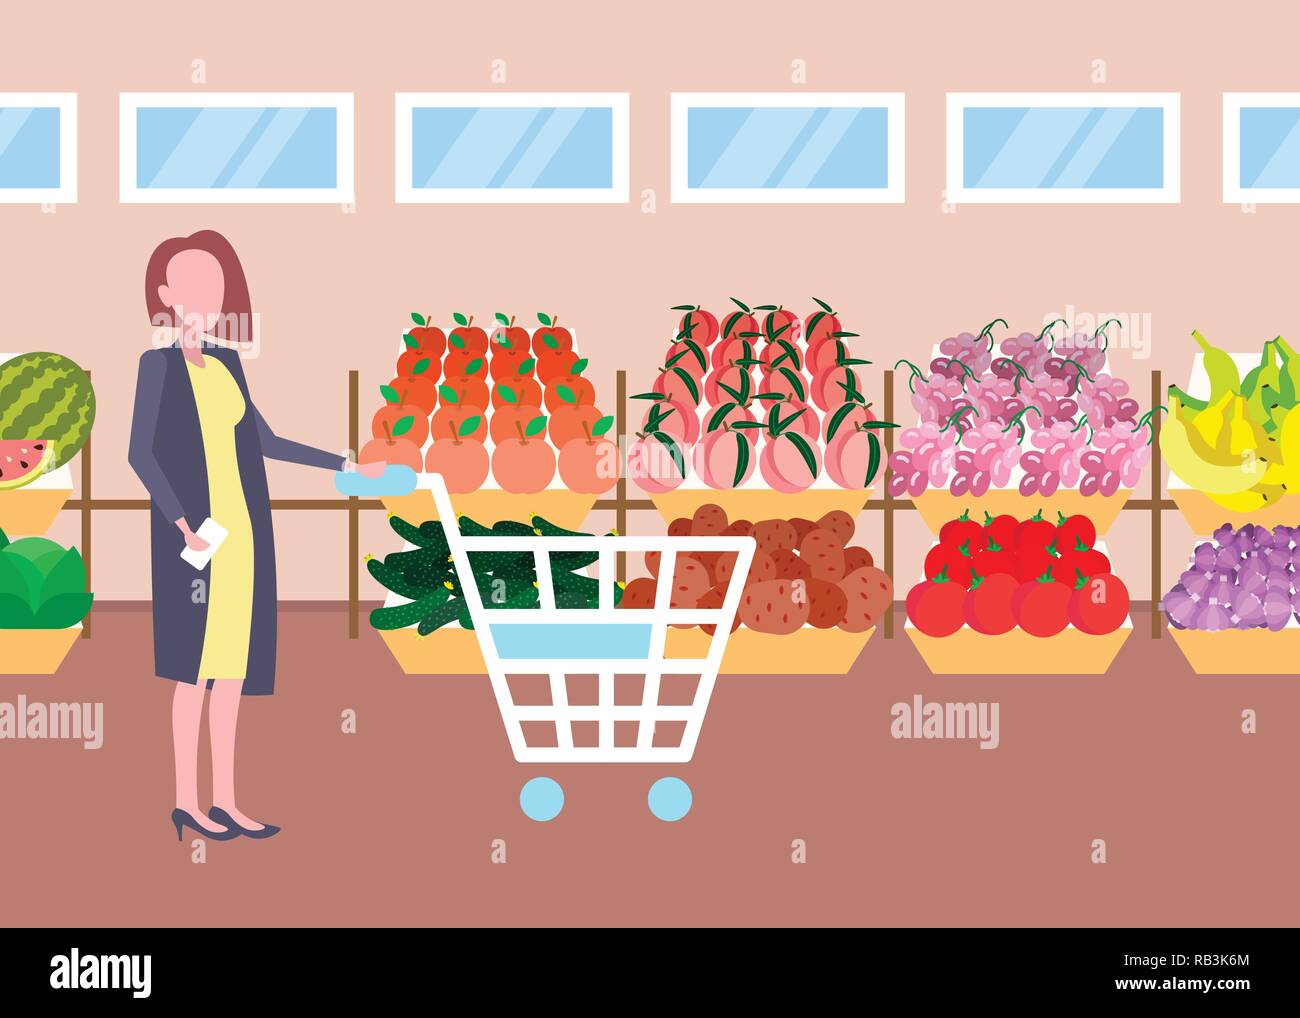 Donna del cliente azienda carrello carrello acquisti organico fresco frutta verdura supermercato moderno centro commerciale interno femmina personaggio dei cartoni animati per tutta la lunghezza orizzontale piana Illustrazione Vettoriale